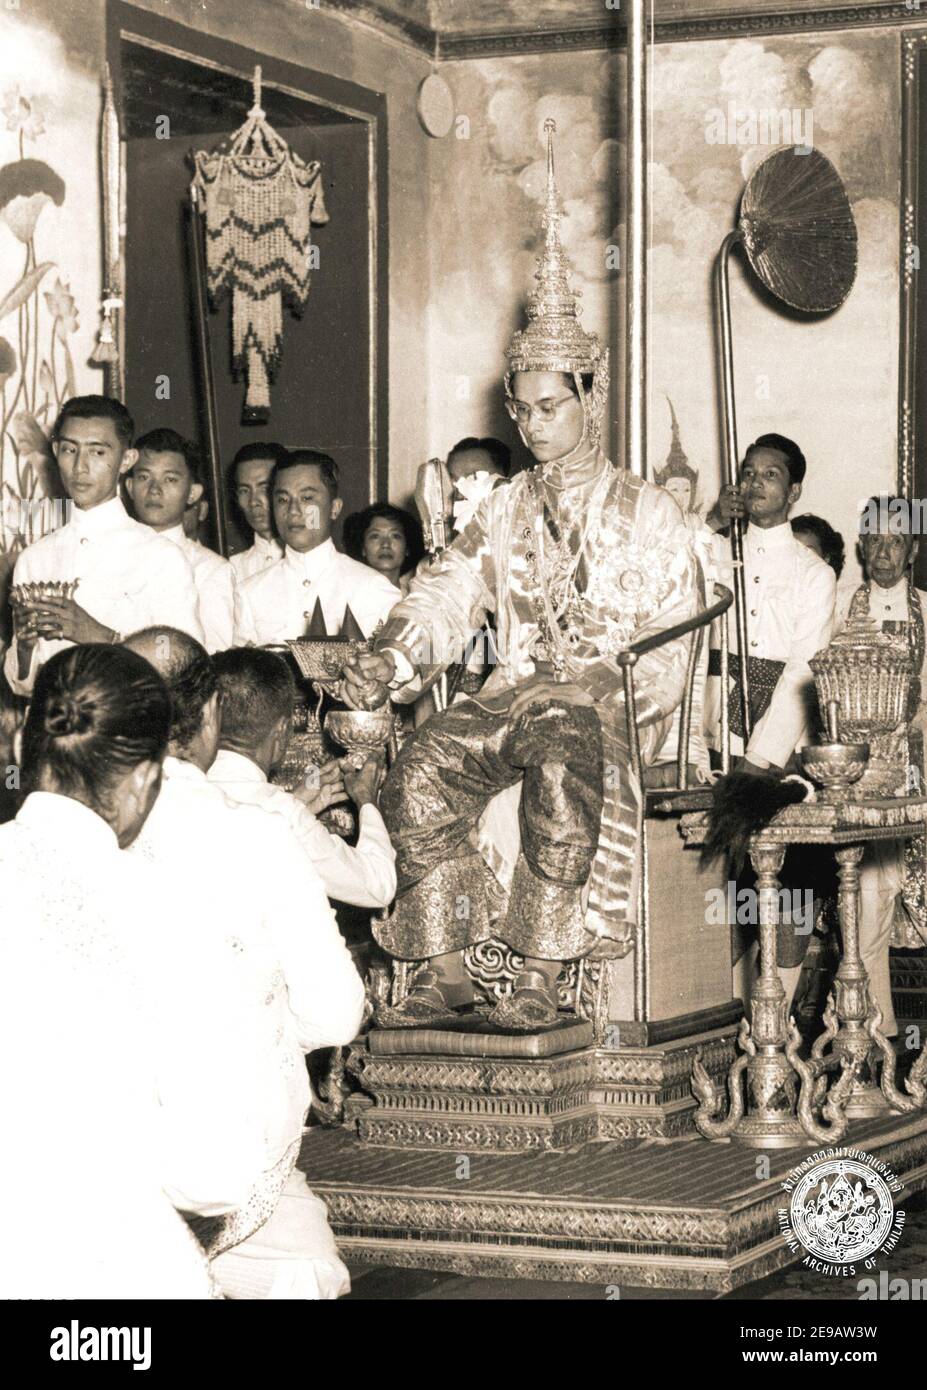 Le roi Bhumibol Adulyadej de Thaïlande lors de la cérémonie de serment de 1950, 4 ans après son accession au trône, à Bangkok, en Thaïlande. Photo par ABACAPRESS.COM Banque D'Images